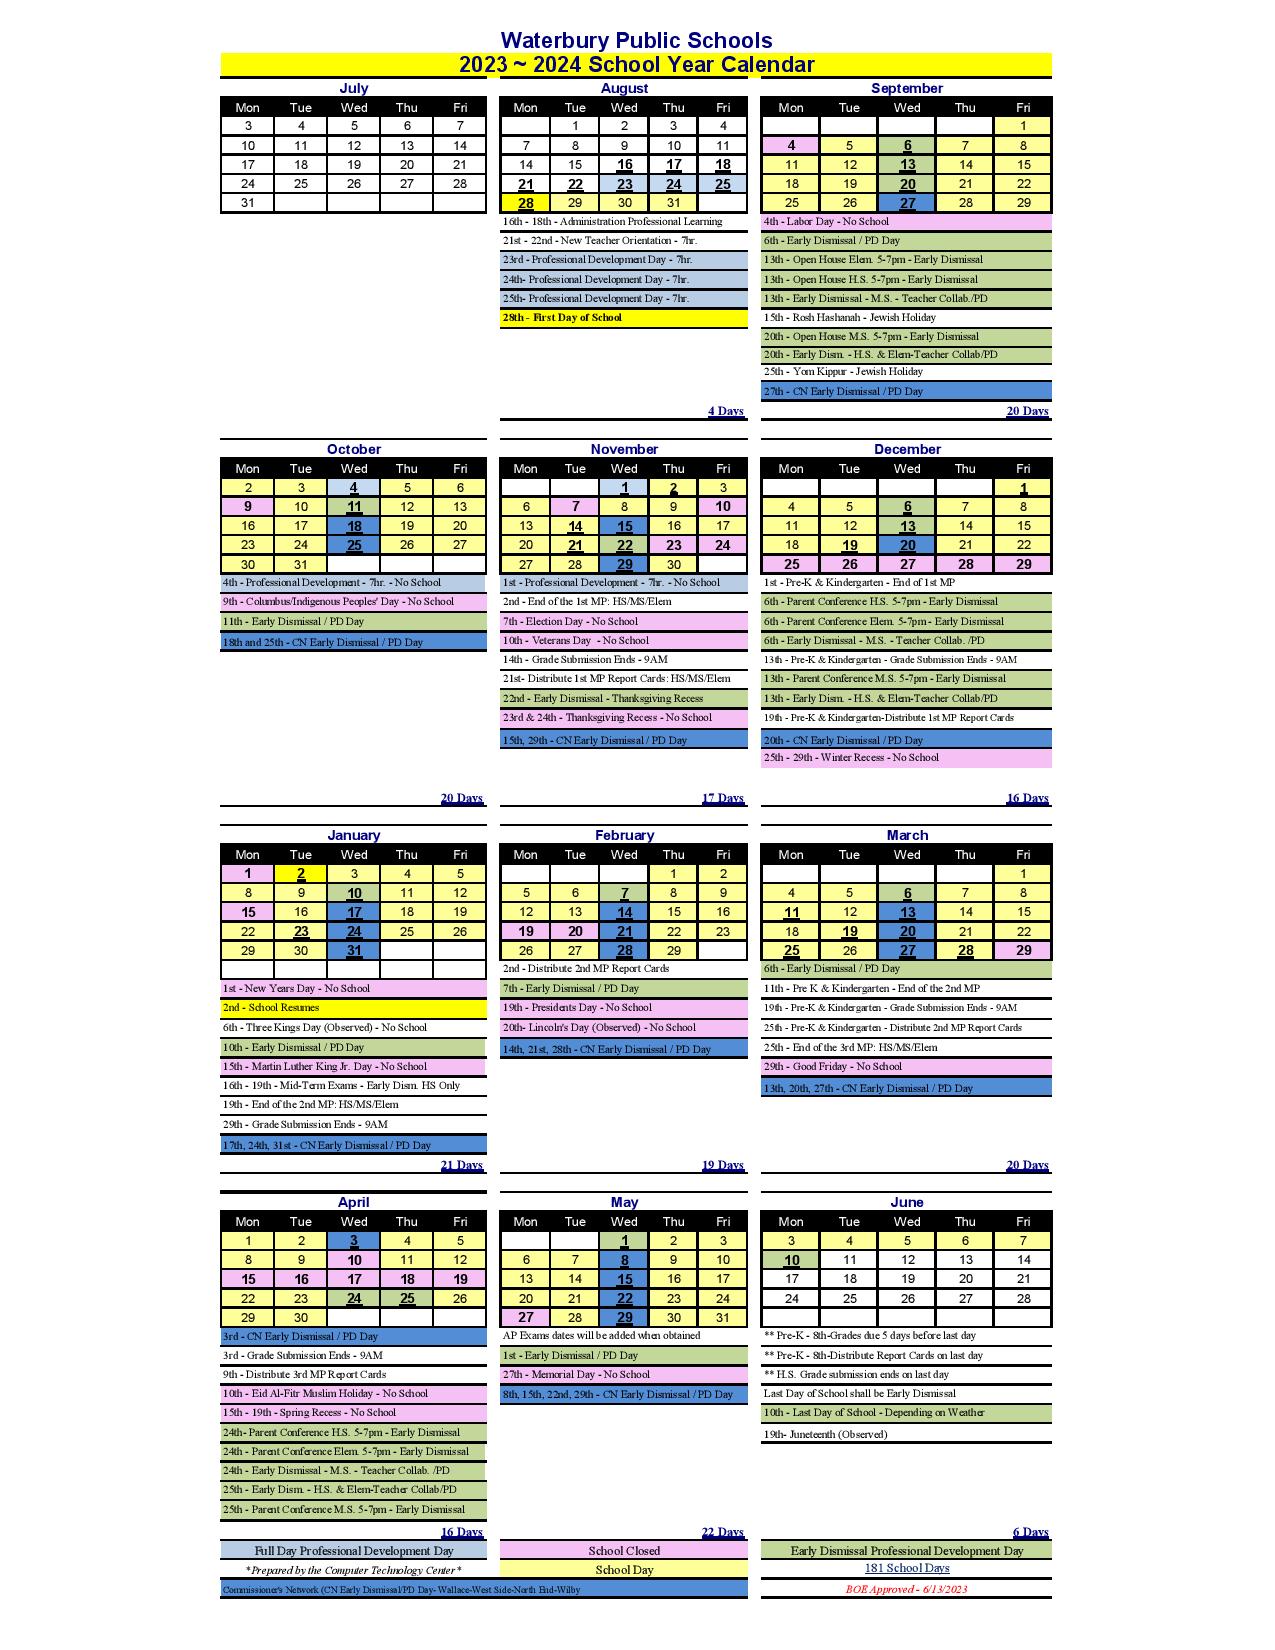 Waterbury Public Schools Calendar 2024 in PDF